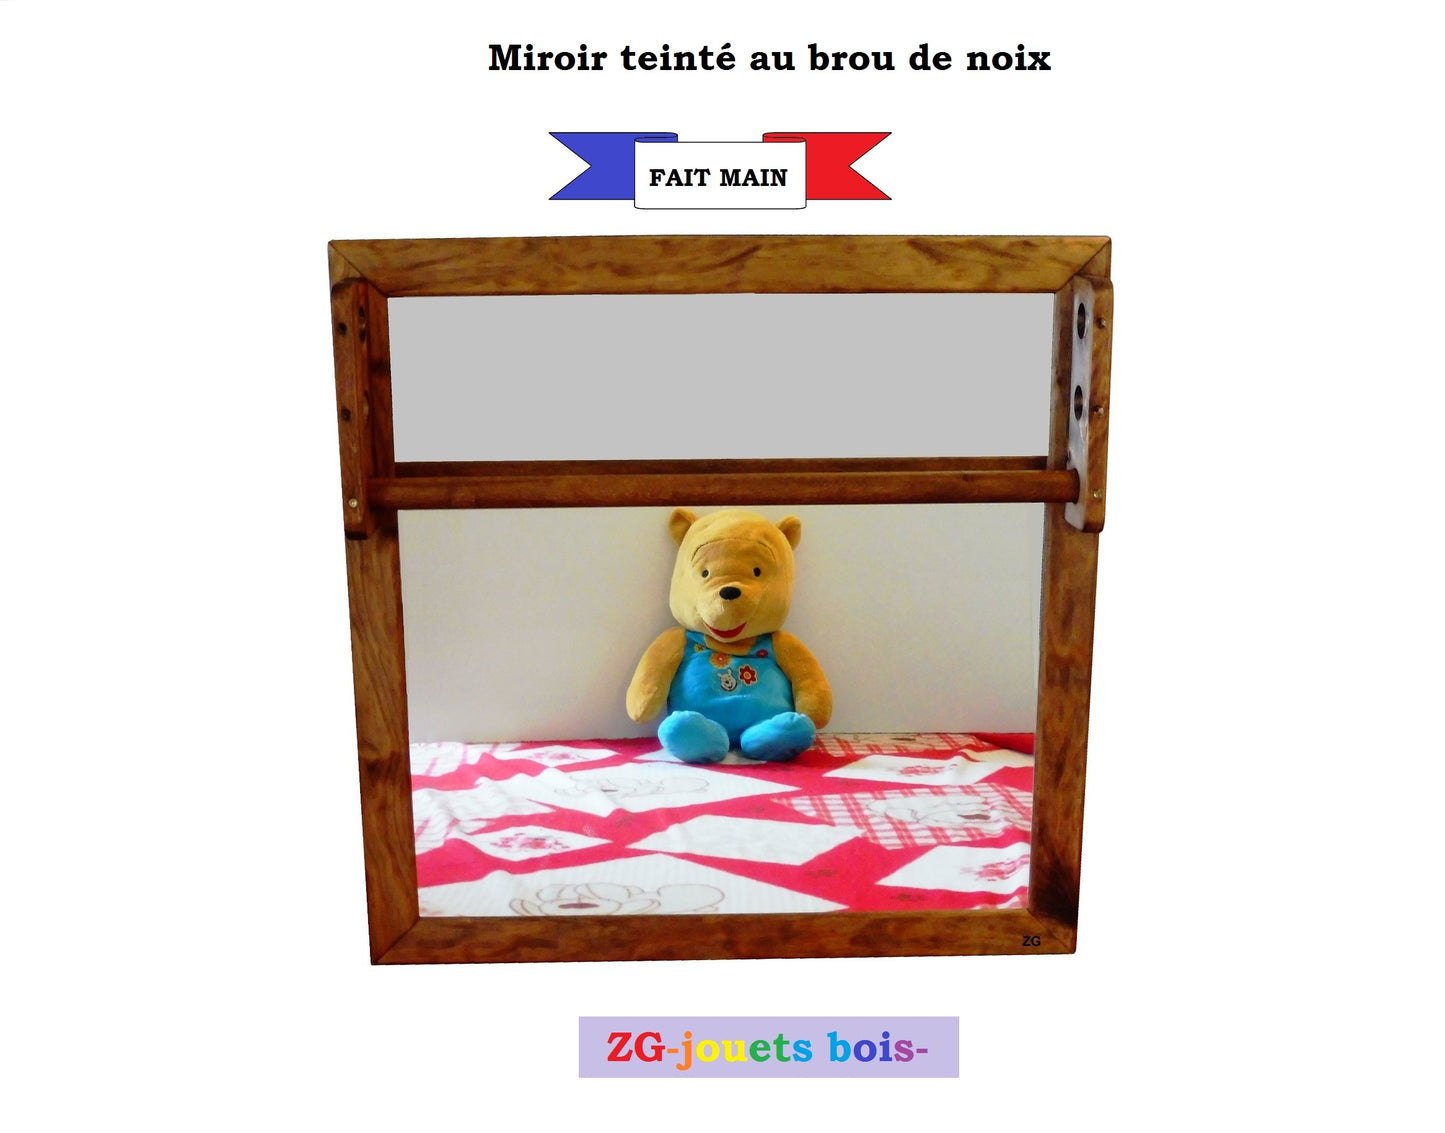 Miroir Montessori 65x65 cm, incassable, avec barre de préhension réglable